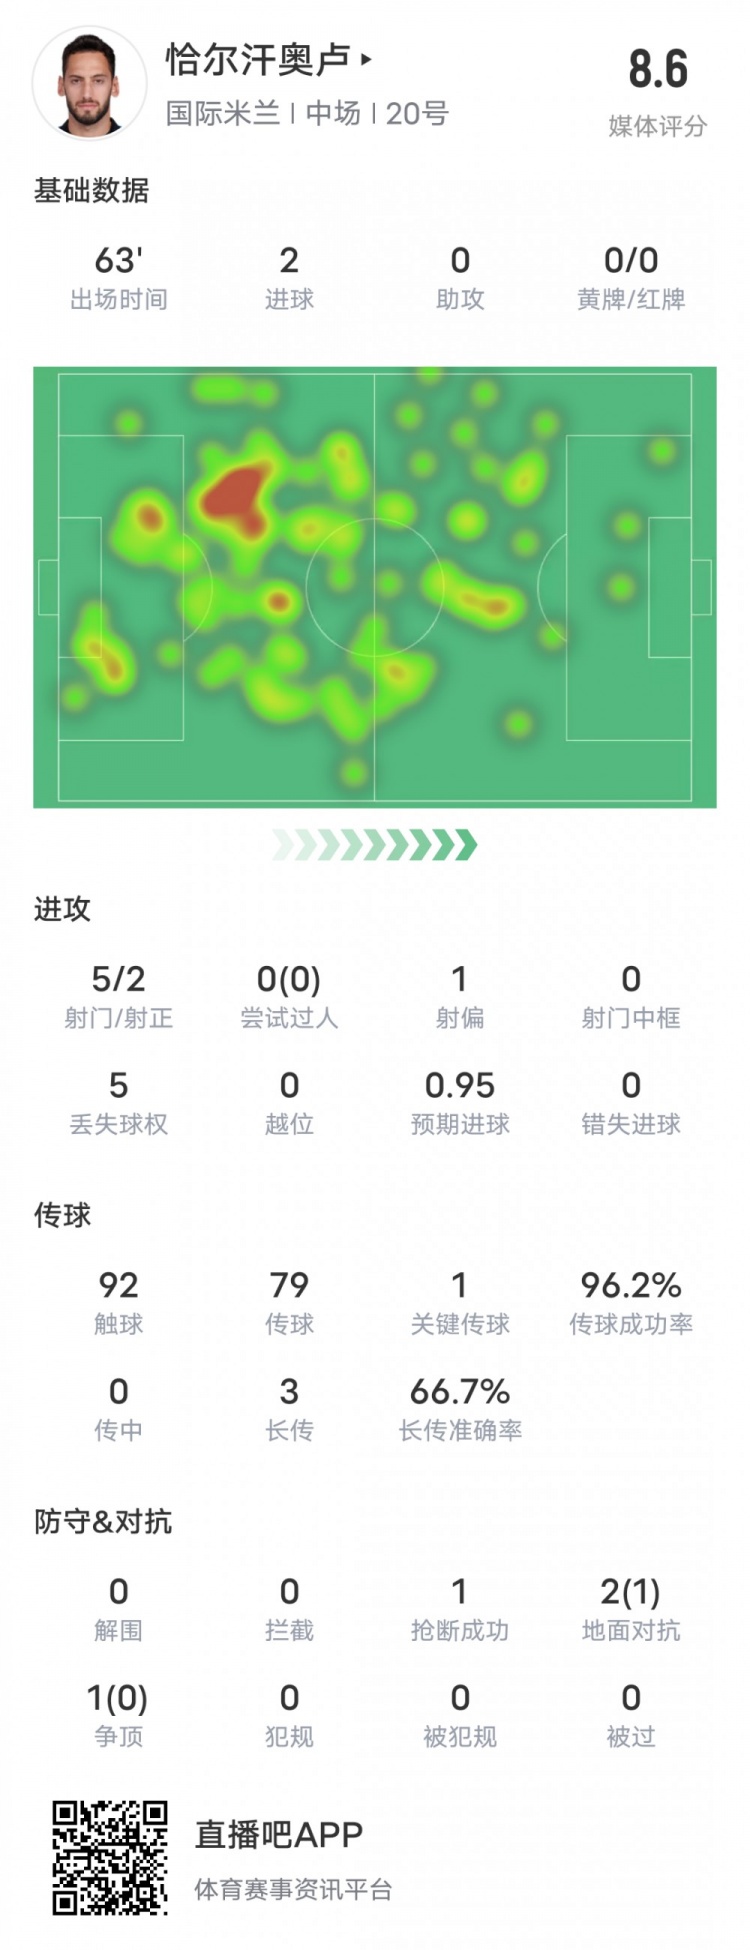 恰尔汗奥卢本场数据：2进球1关键传球&传球成功率96.2%，评分8.6